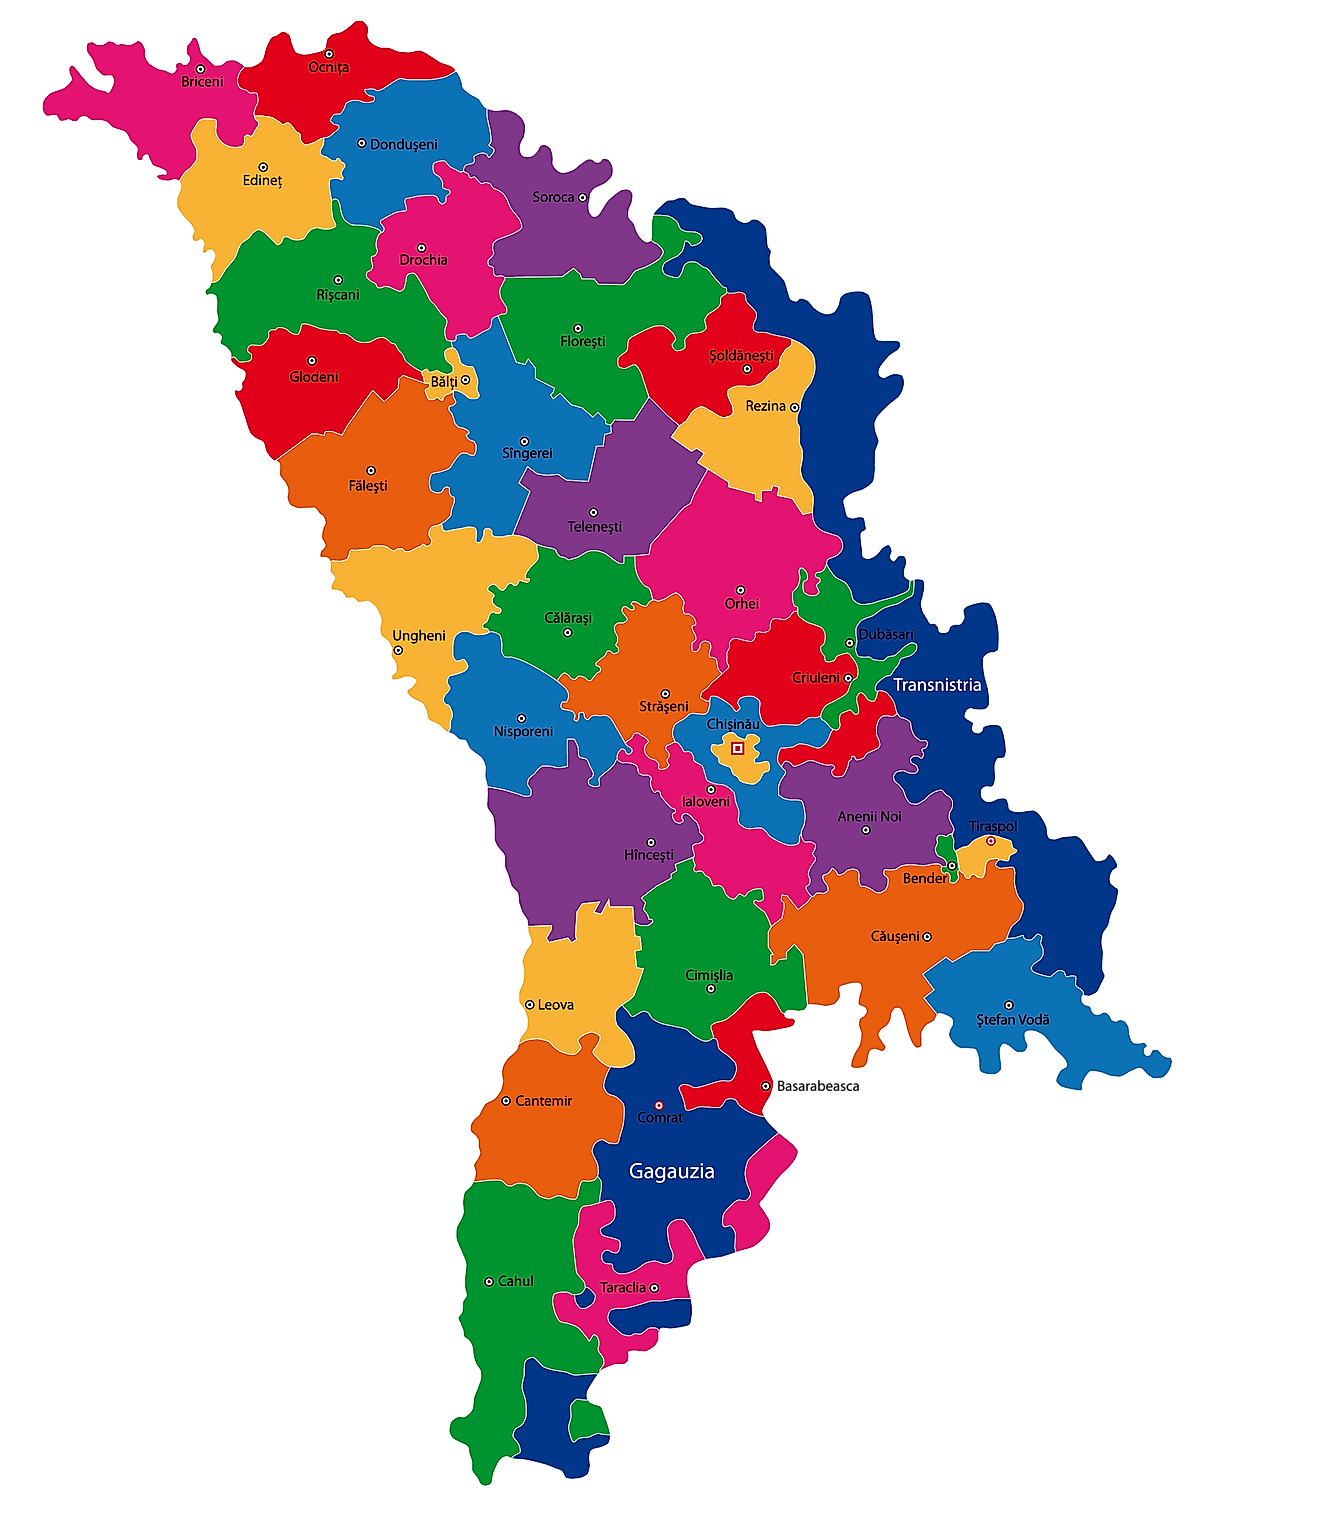 Mapa político de Moldavia que muestra sus 32 raiones y la ciudad capital de Chisinau.